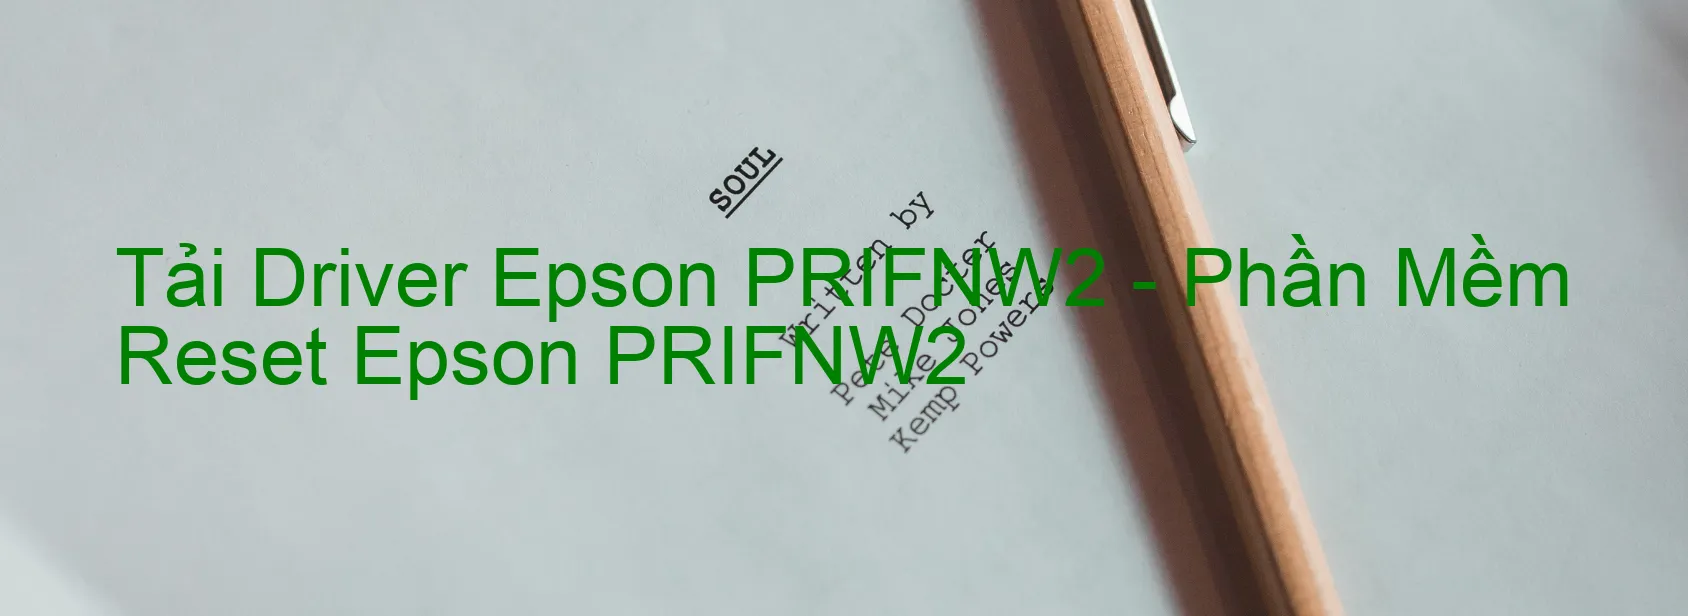 Driver Epson PRIFNW2, Phần Mềm Reset Epson PRIFNW2